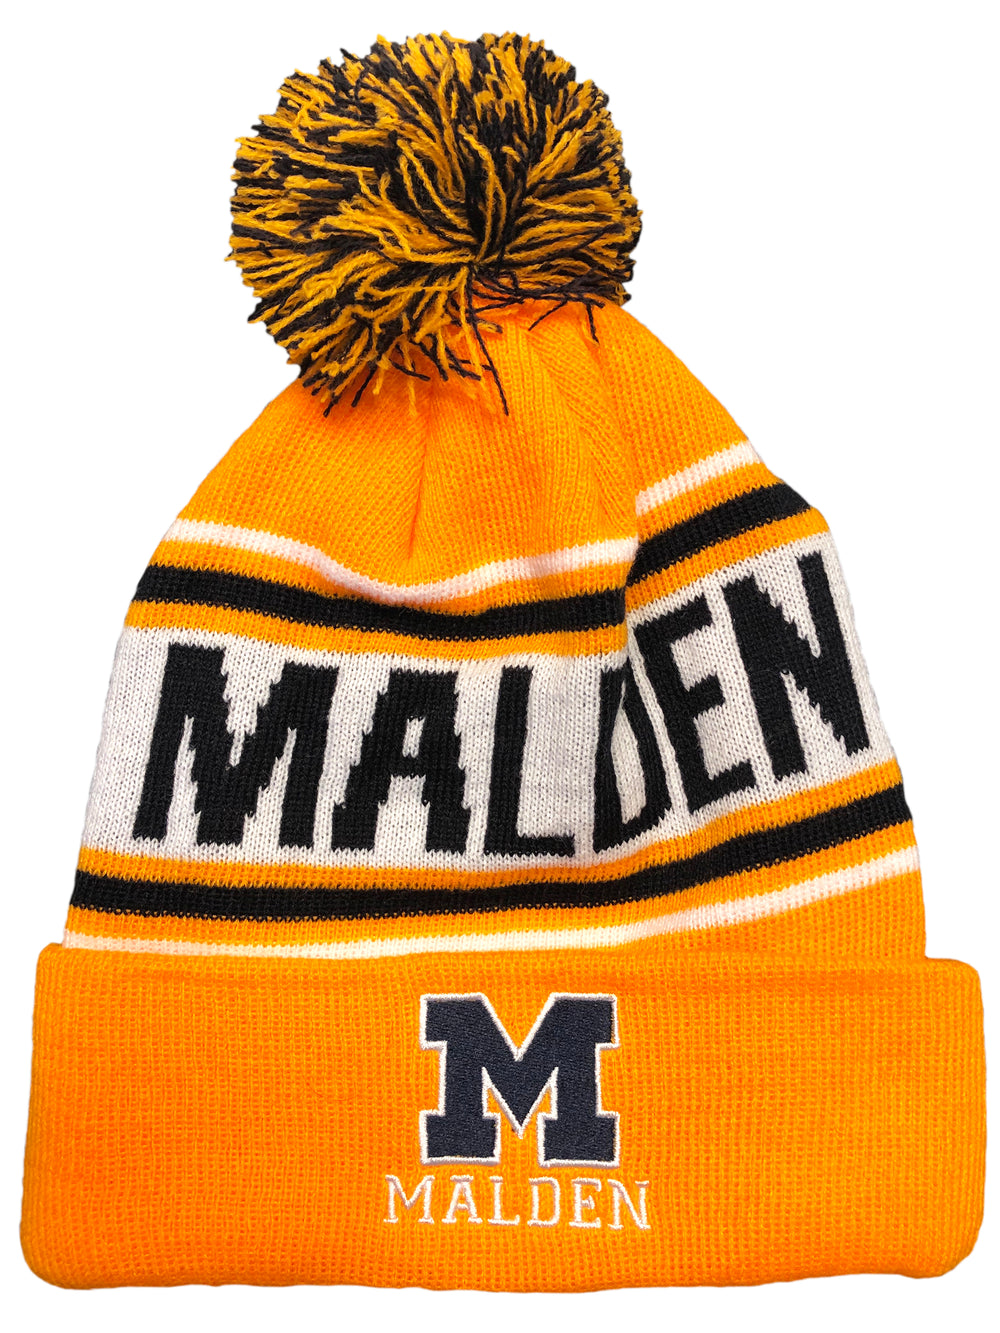 Malden Winter Hat